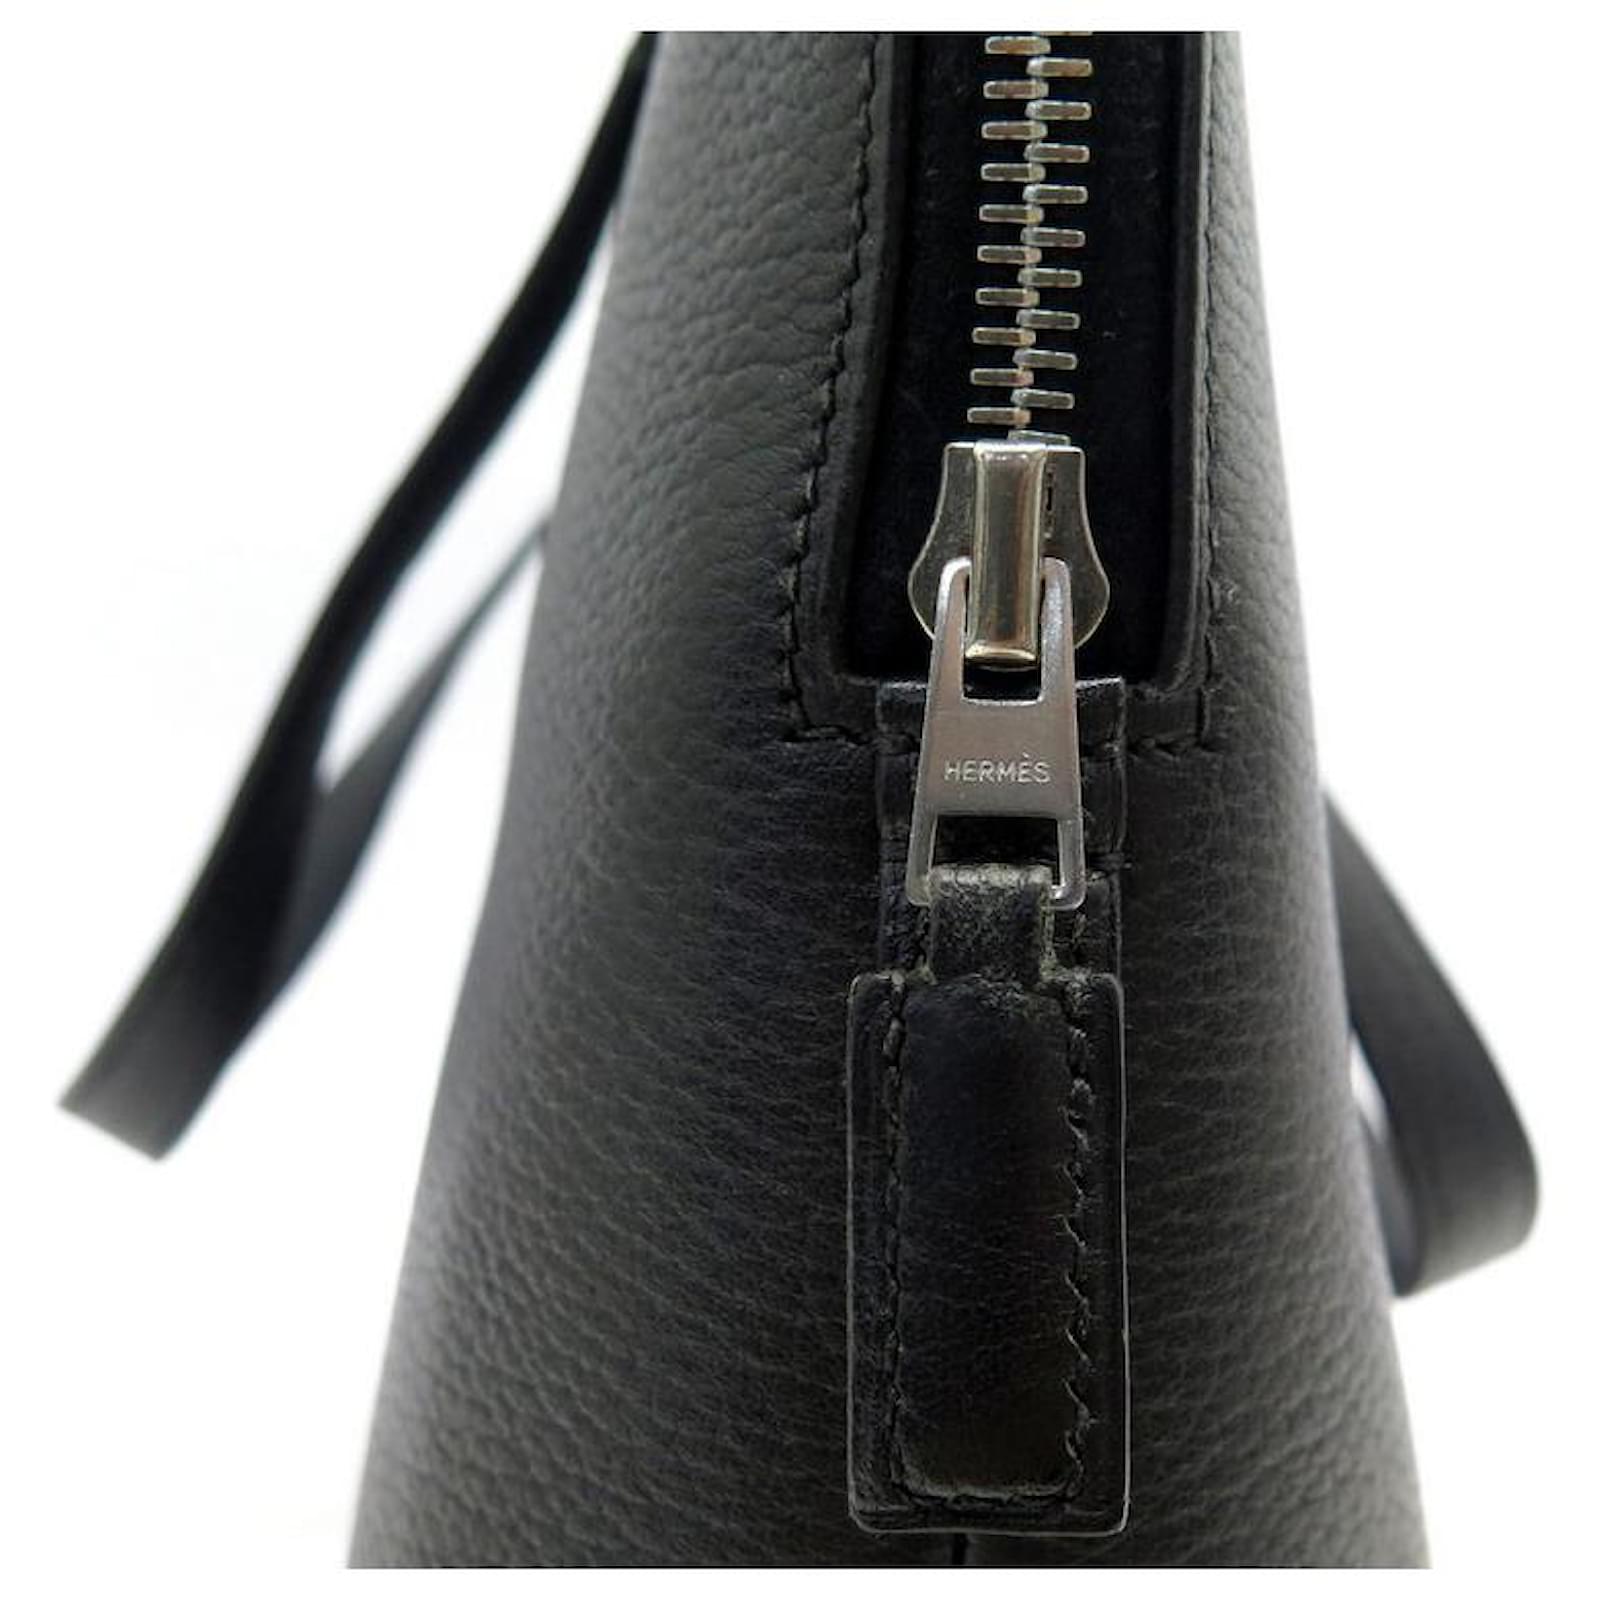 Sold at Auction: Vintage Hermes Kelly 25 Black Leather Handbag